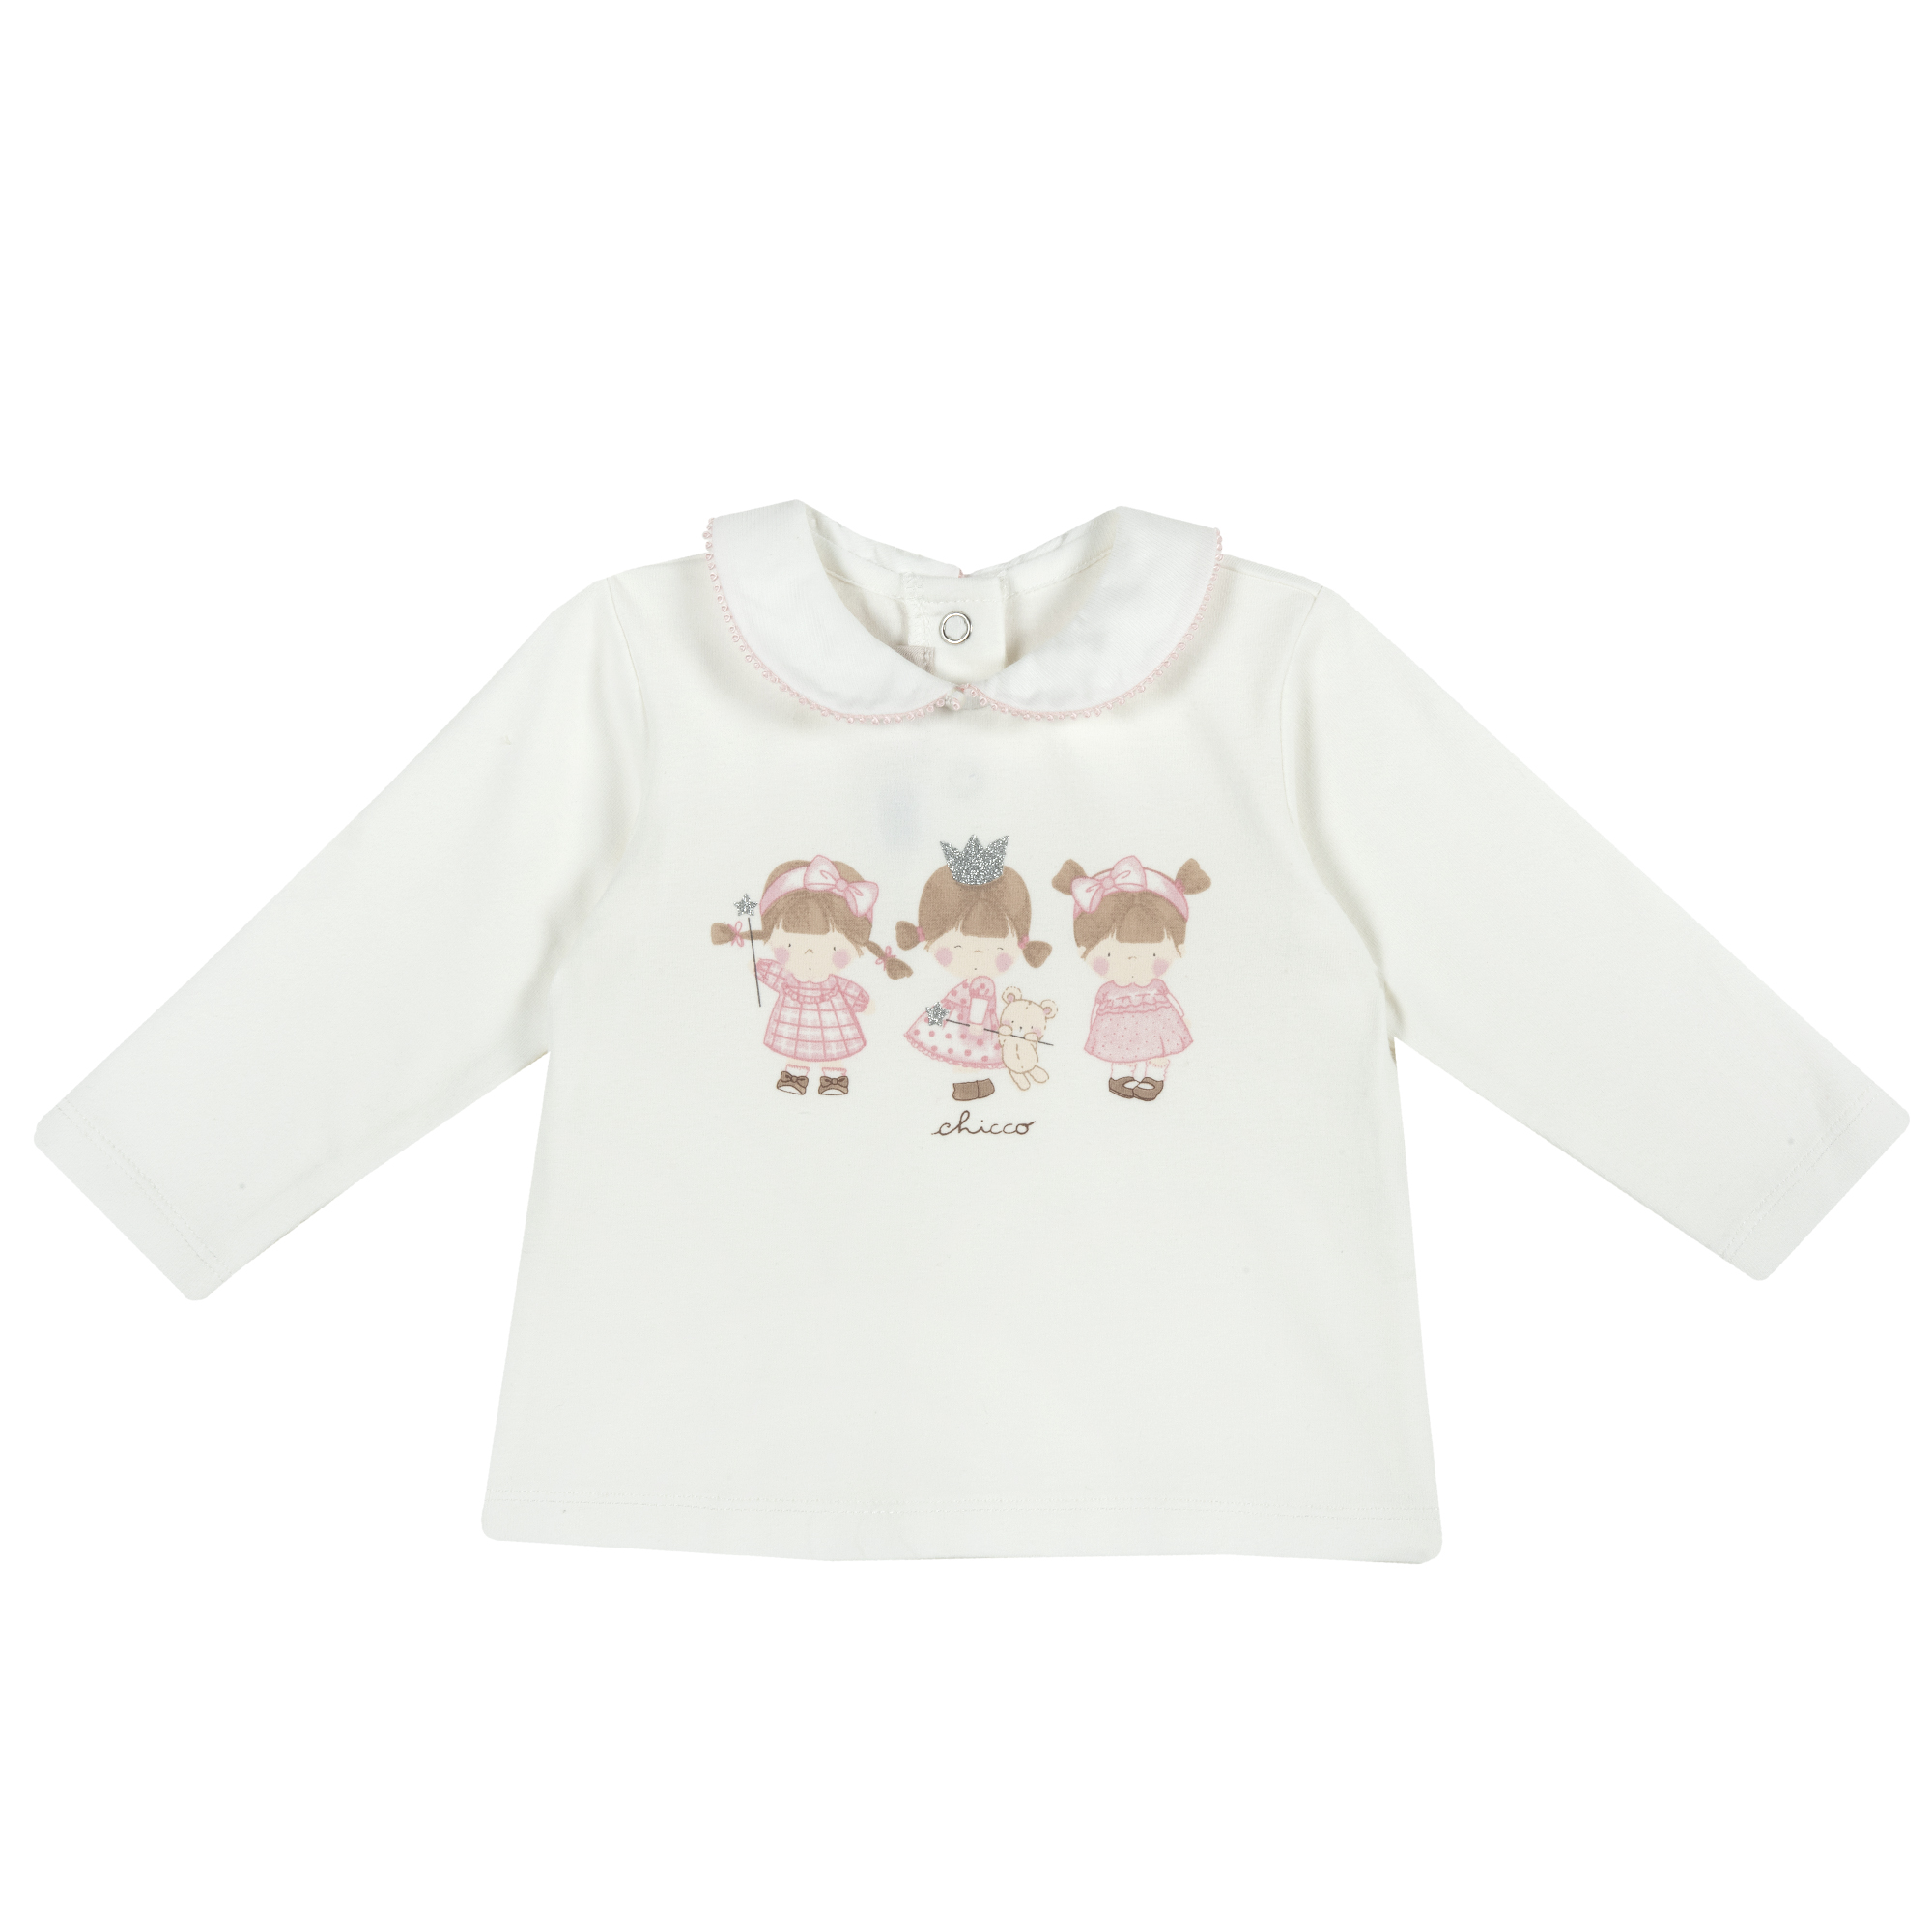 Bluza copii Chicco, inchidere in spate, alb cu model, 47275 CHICCO